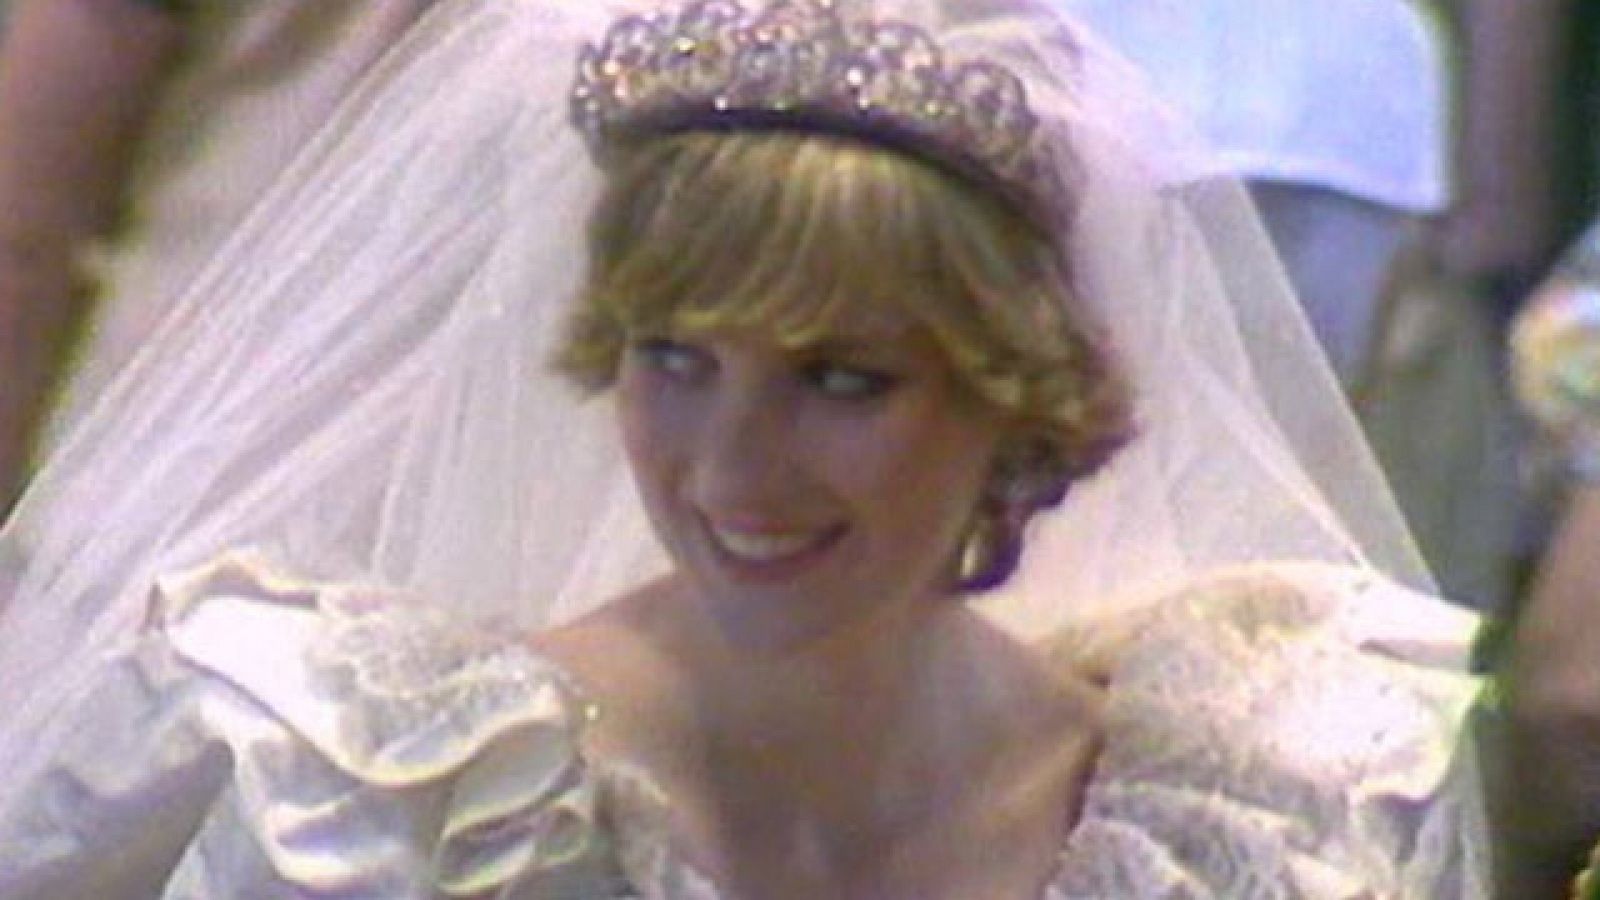 La boda de Carlos y Lady Diana (1981)